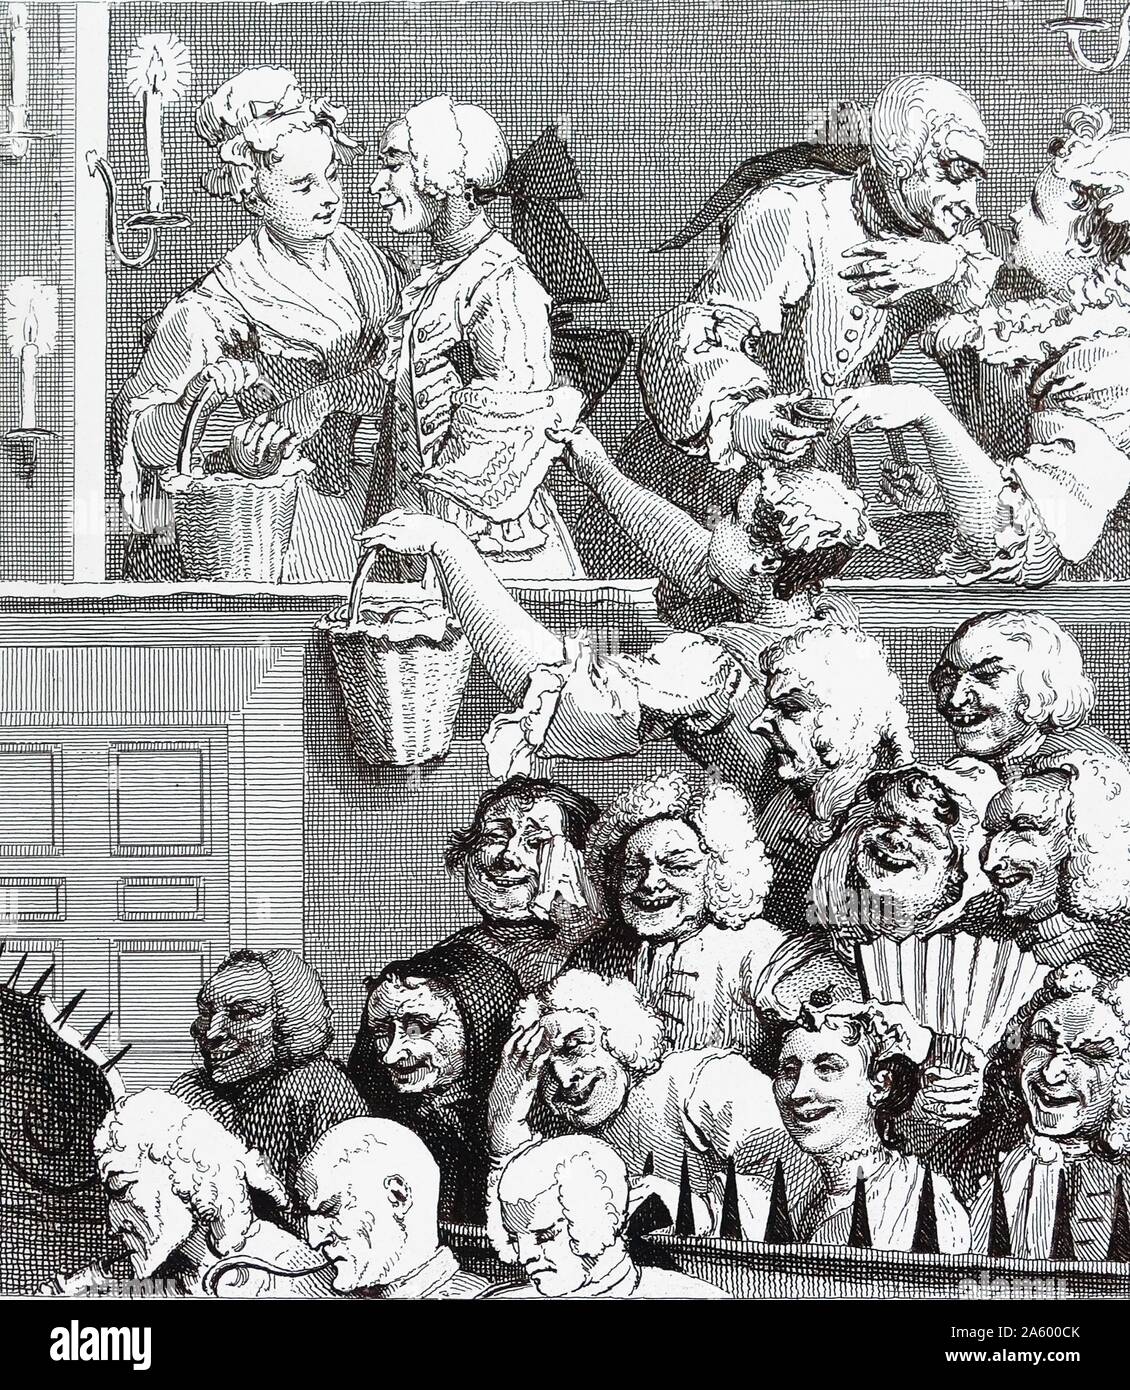 Das lachende Publikum, Bill Of Sale 1733; von William Hogarth (1697-1764). Englischer Maler, Grafiker, bildhafte Satiriker. Das Publikum lacht gliedert sich in drei Abschnitte, die drei Klassen von Menschen darstellen Stockfoto